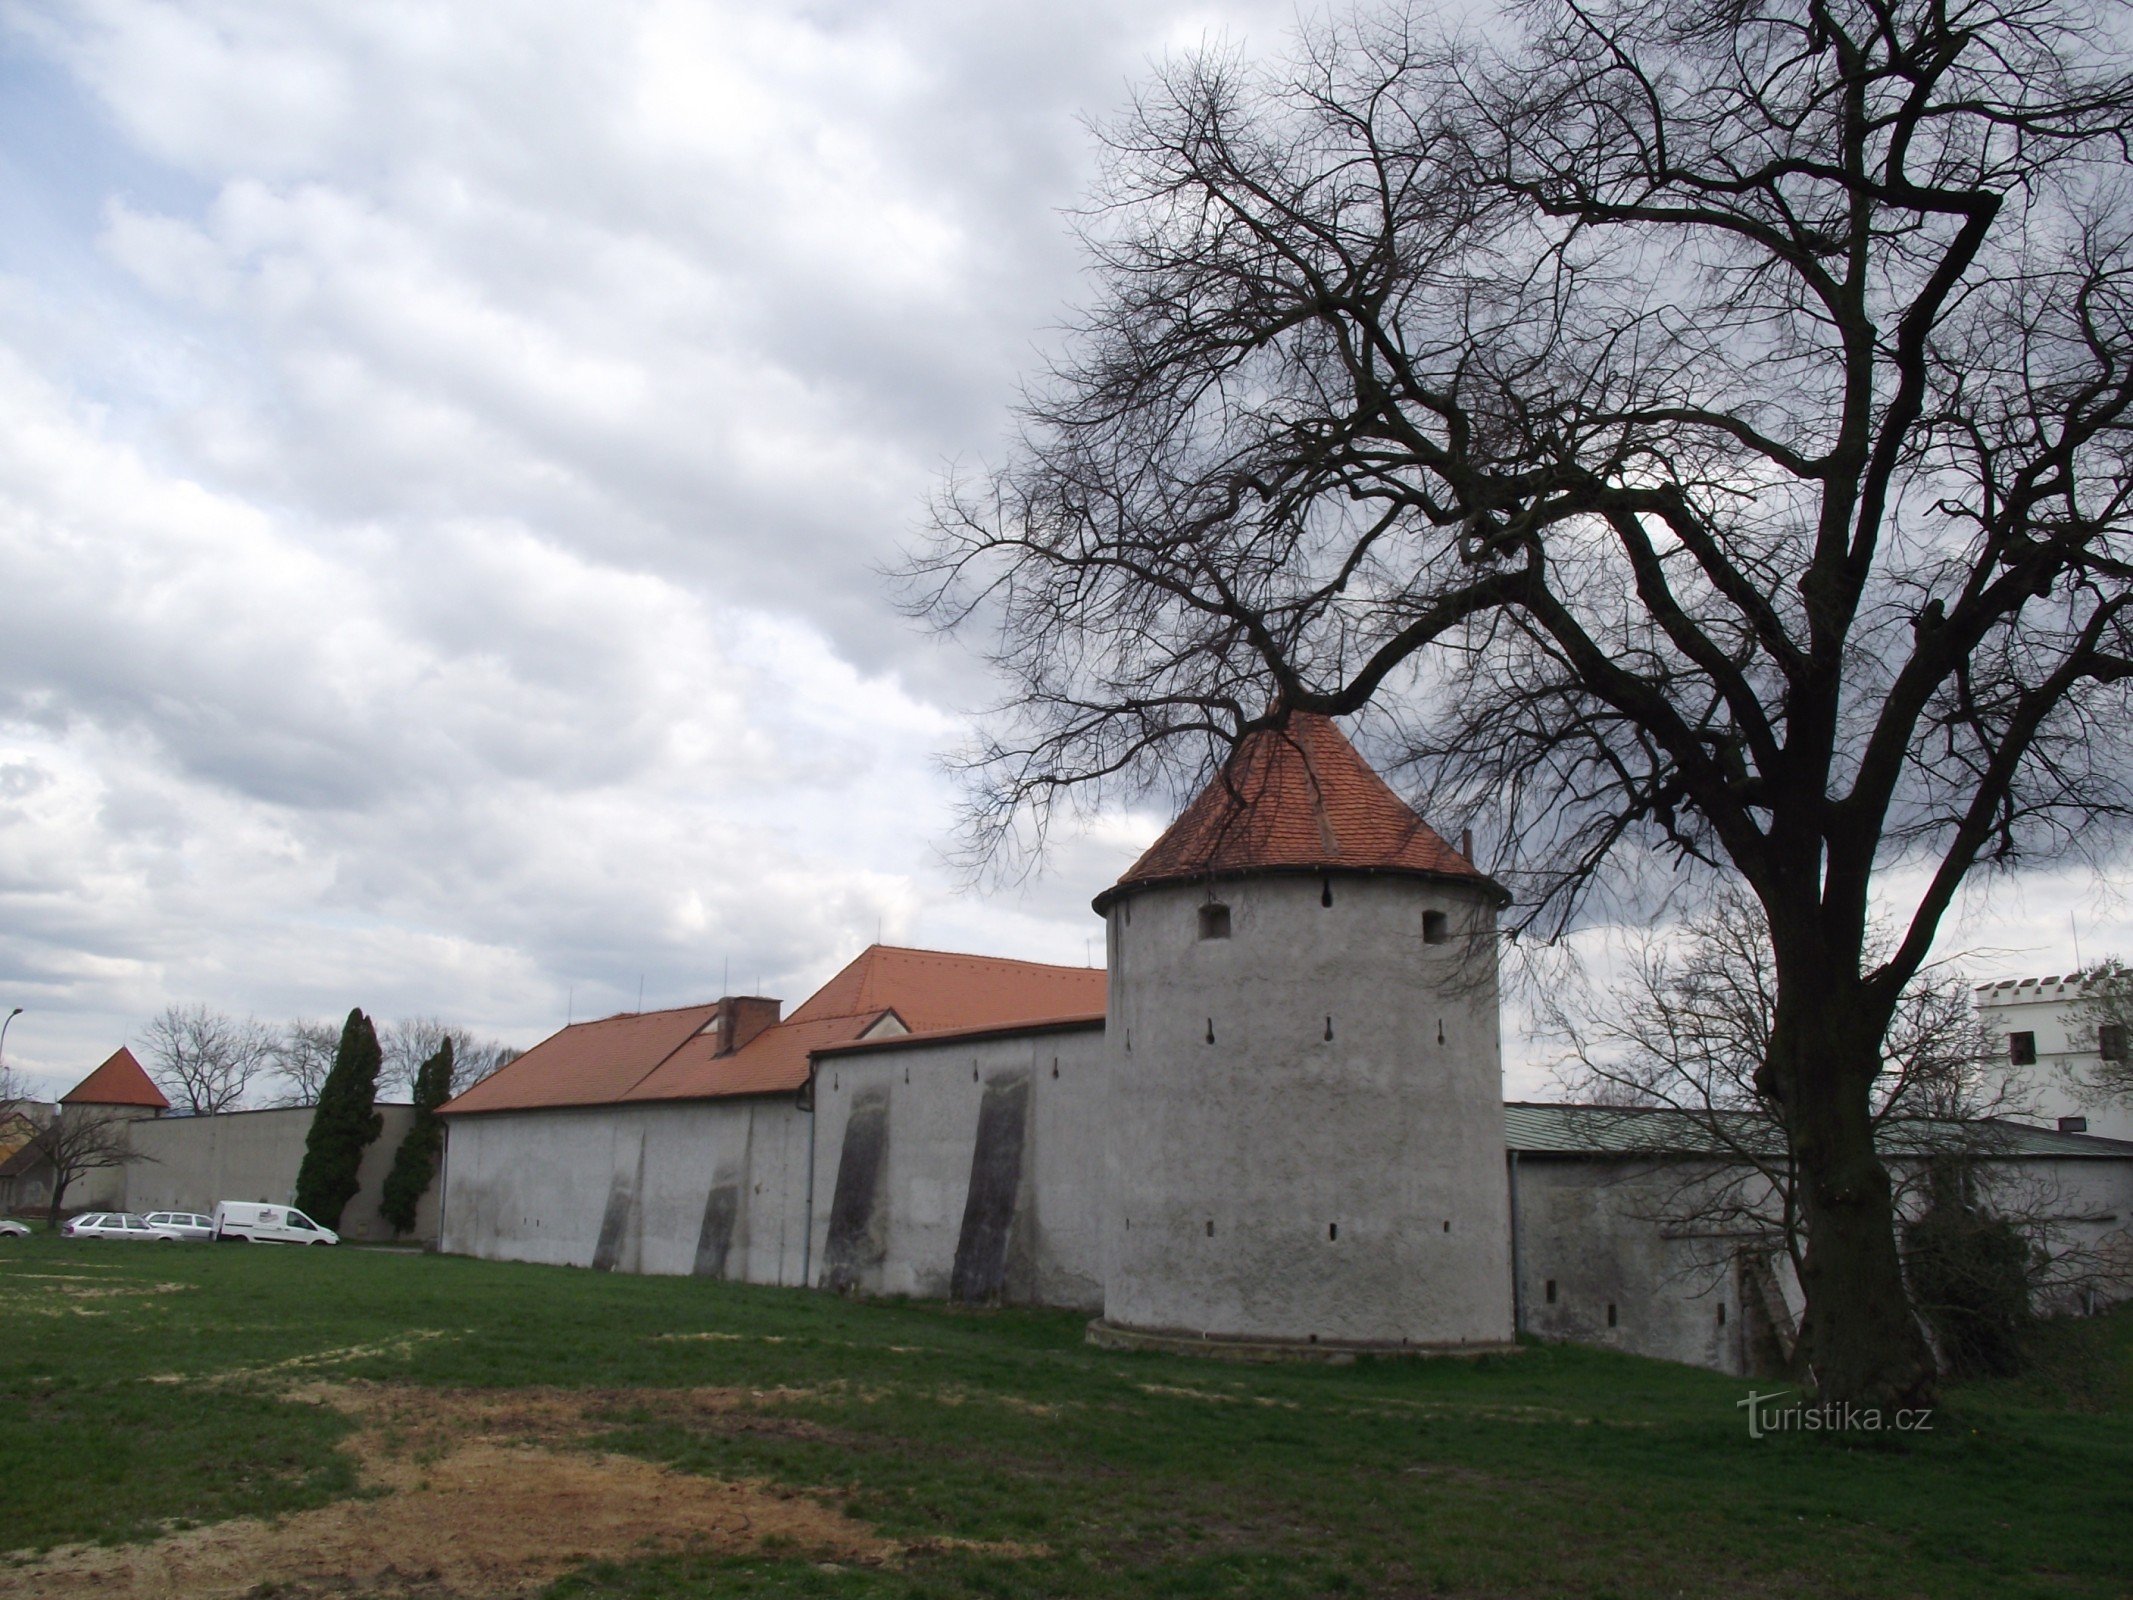 Uherský Brod - fortificații ale orașului